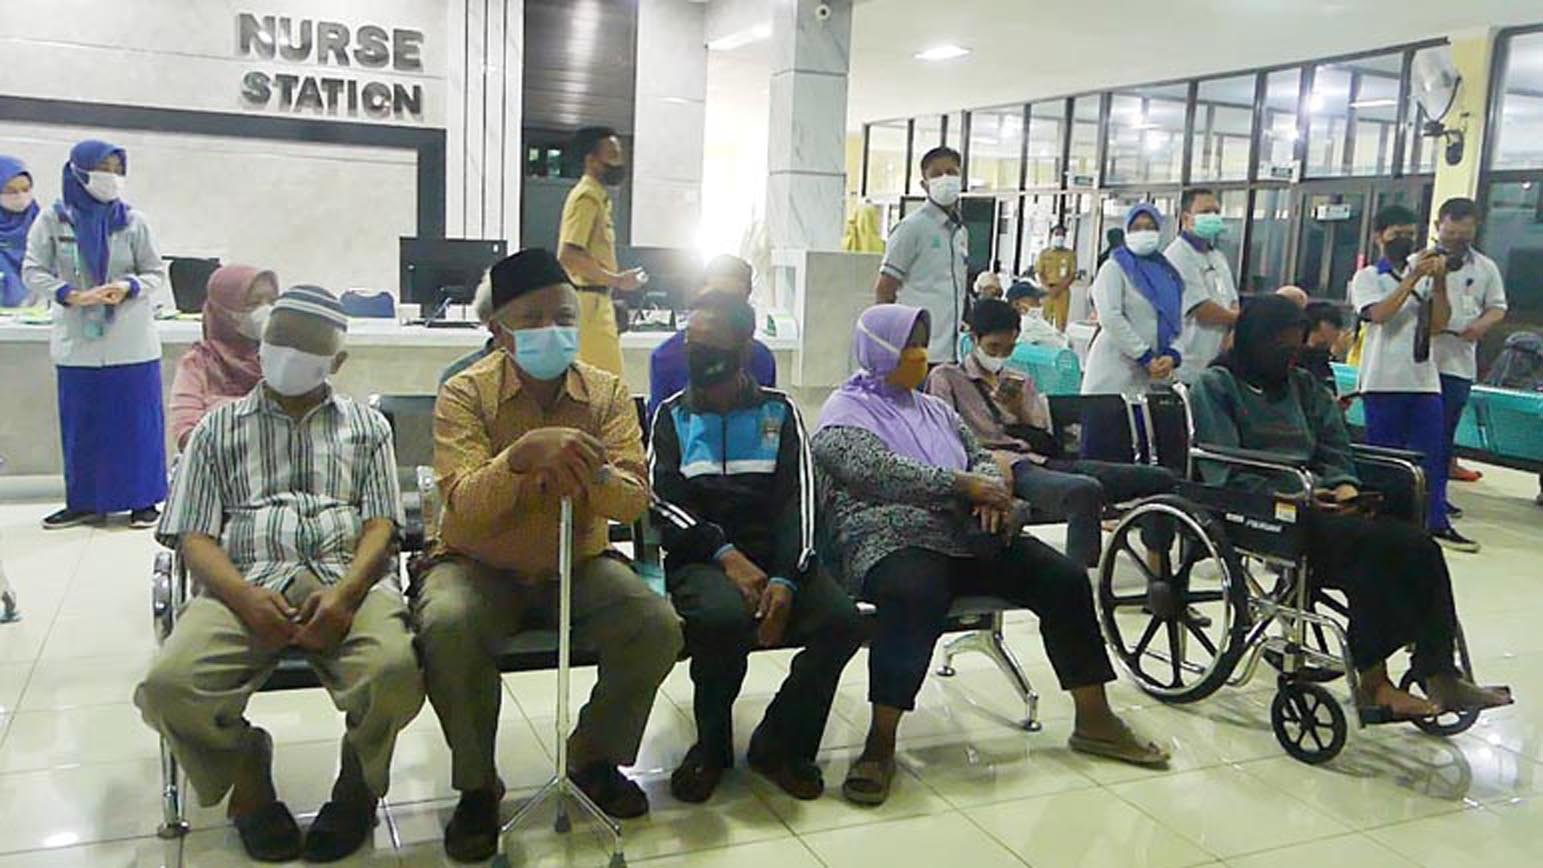 TUNGGU. Sejumlah pasien sedang menunggu di poliklinik RSUD Temanggung. (Foto:setyo wuwuh/temanggung ekspres)